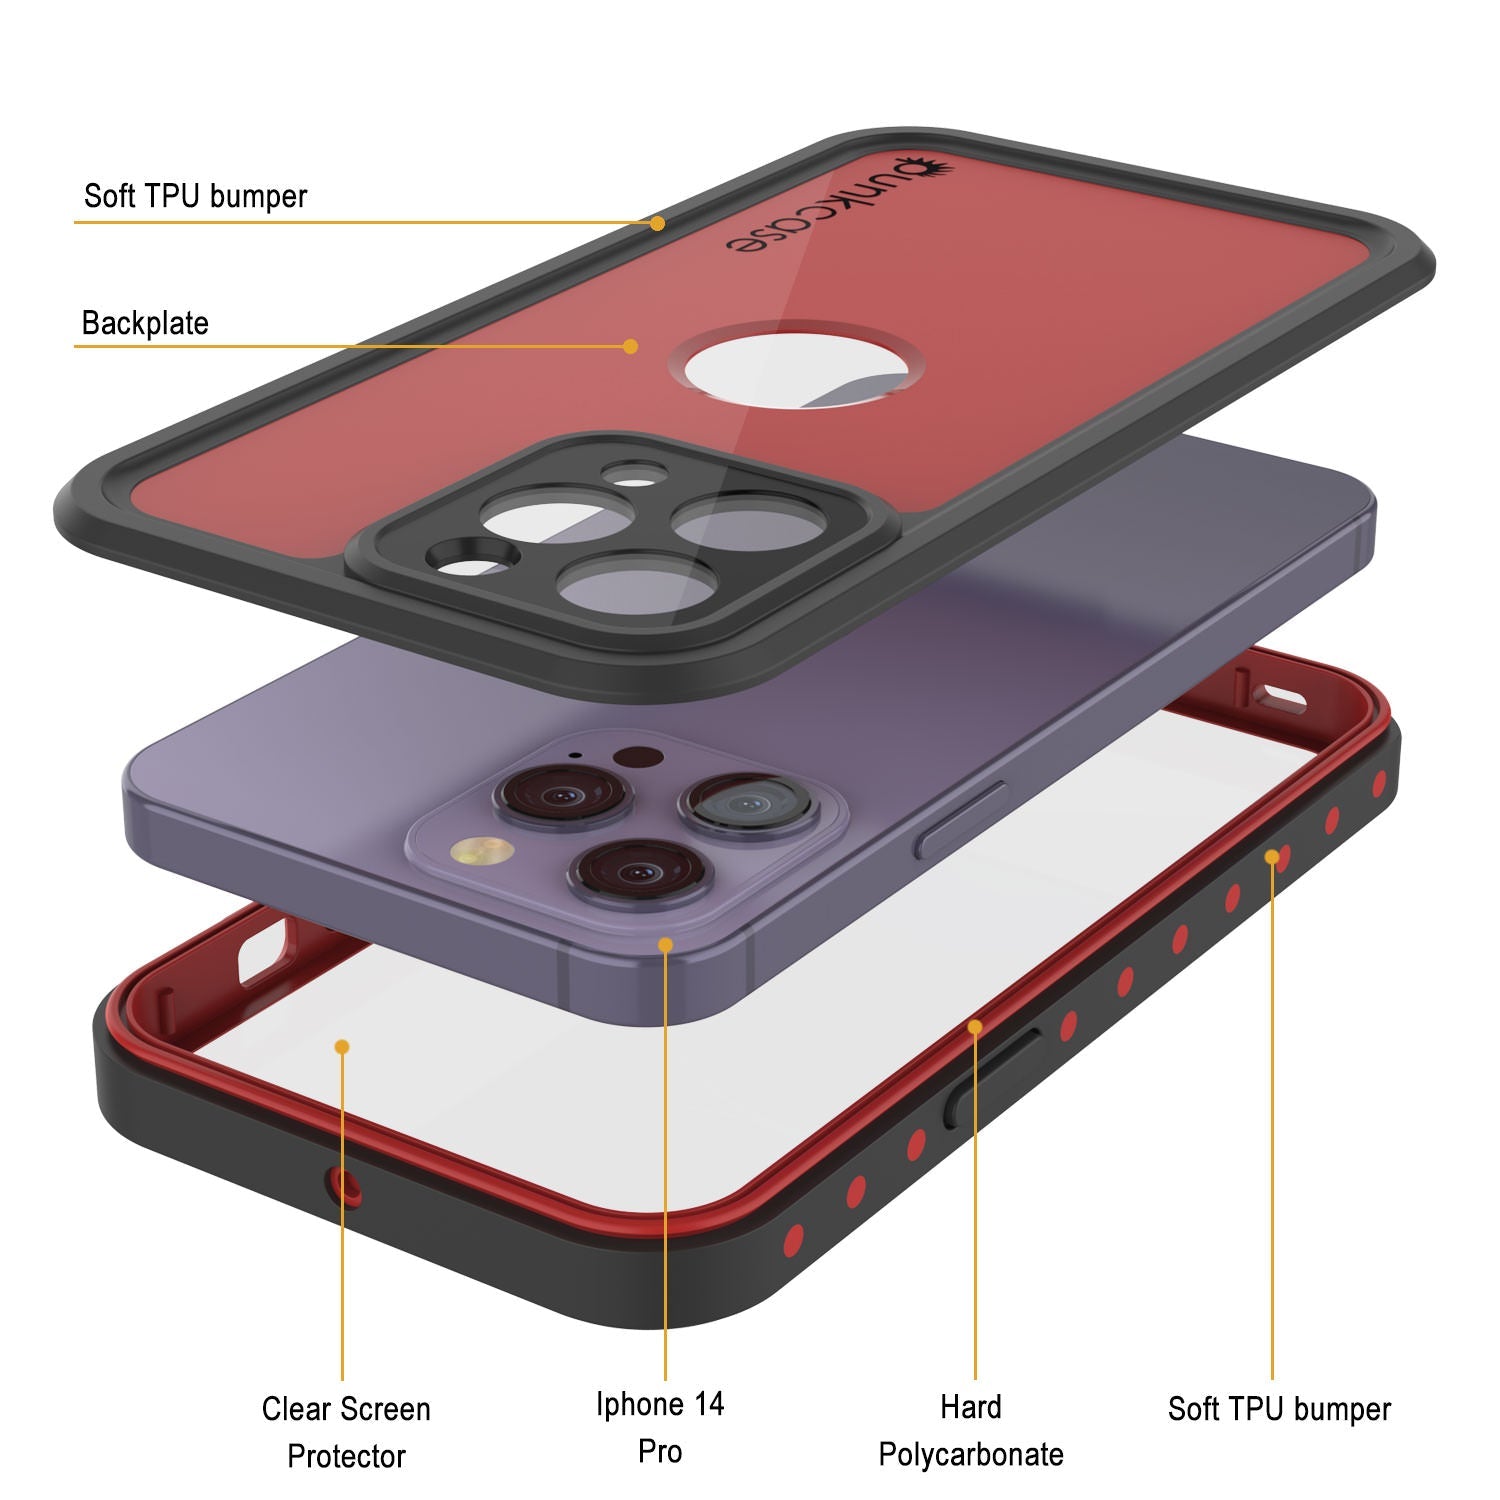 iPhone 14 Pro Waterproof IP68 Case, Punkcase [Red] [StudStar Series] [Slim Fit]